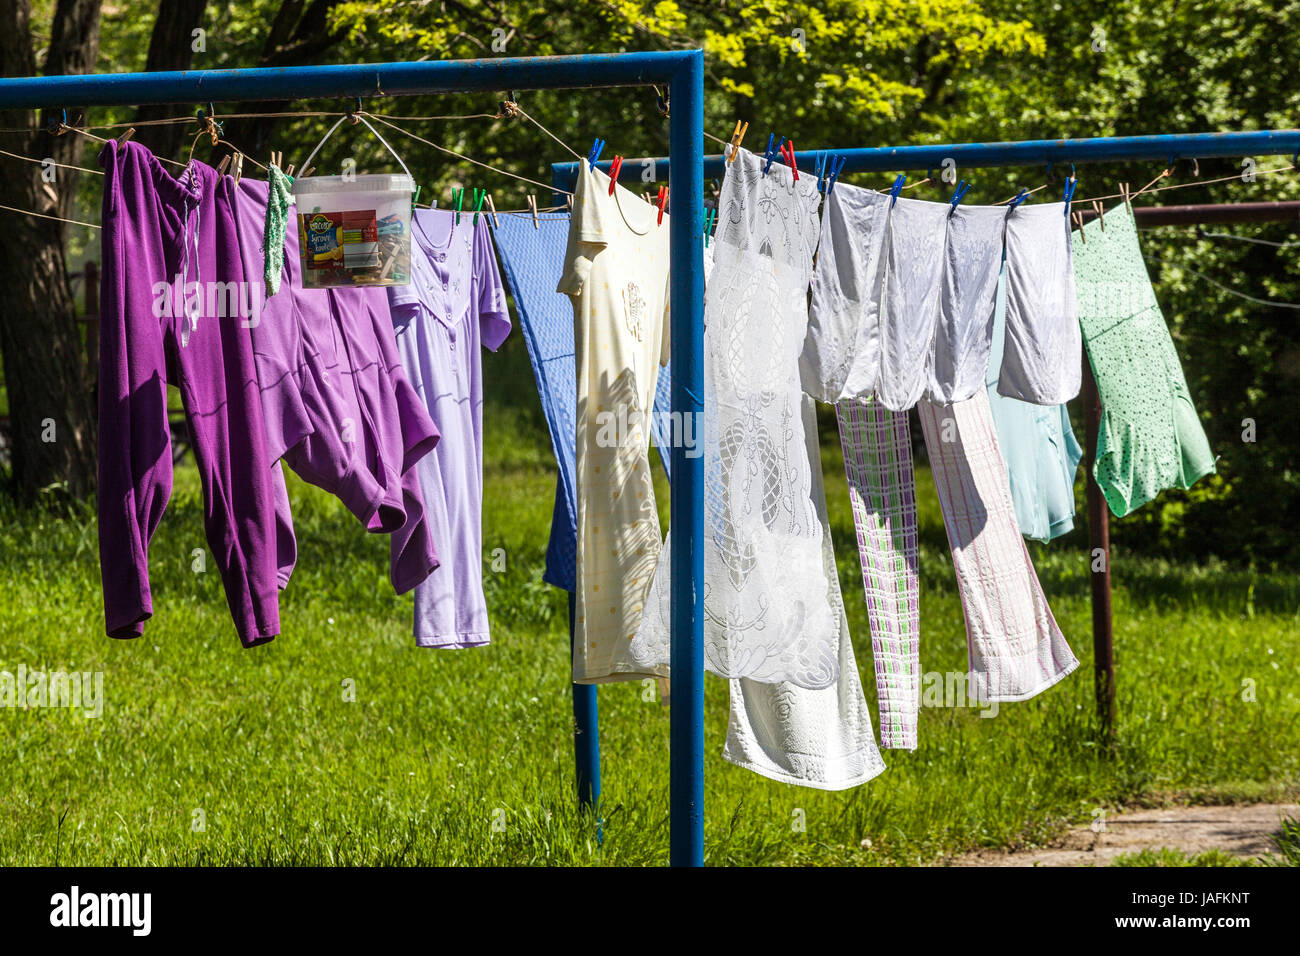 Trocknen Wäscherei hängt auf Kleidung Garten Außen Kleidung Wäscherei Hängen Kleidung Wäscherei auf Wäscheleine frisch sonniger Tag Wäscheleine Garten Stockfoto